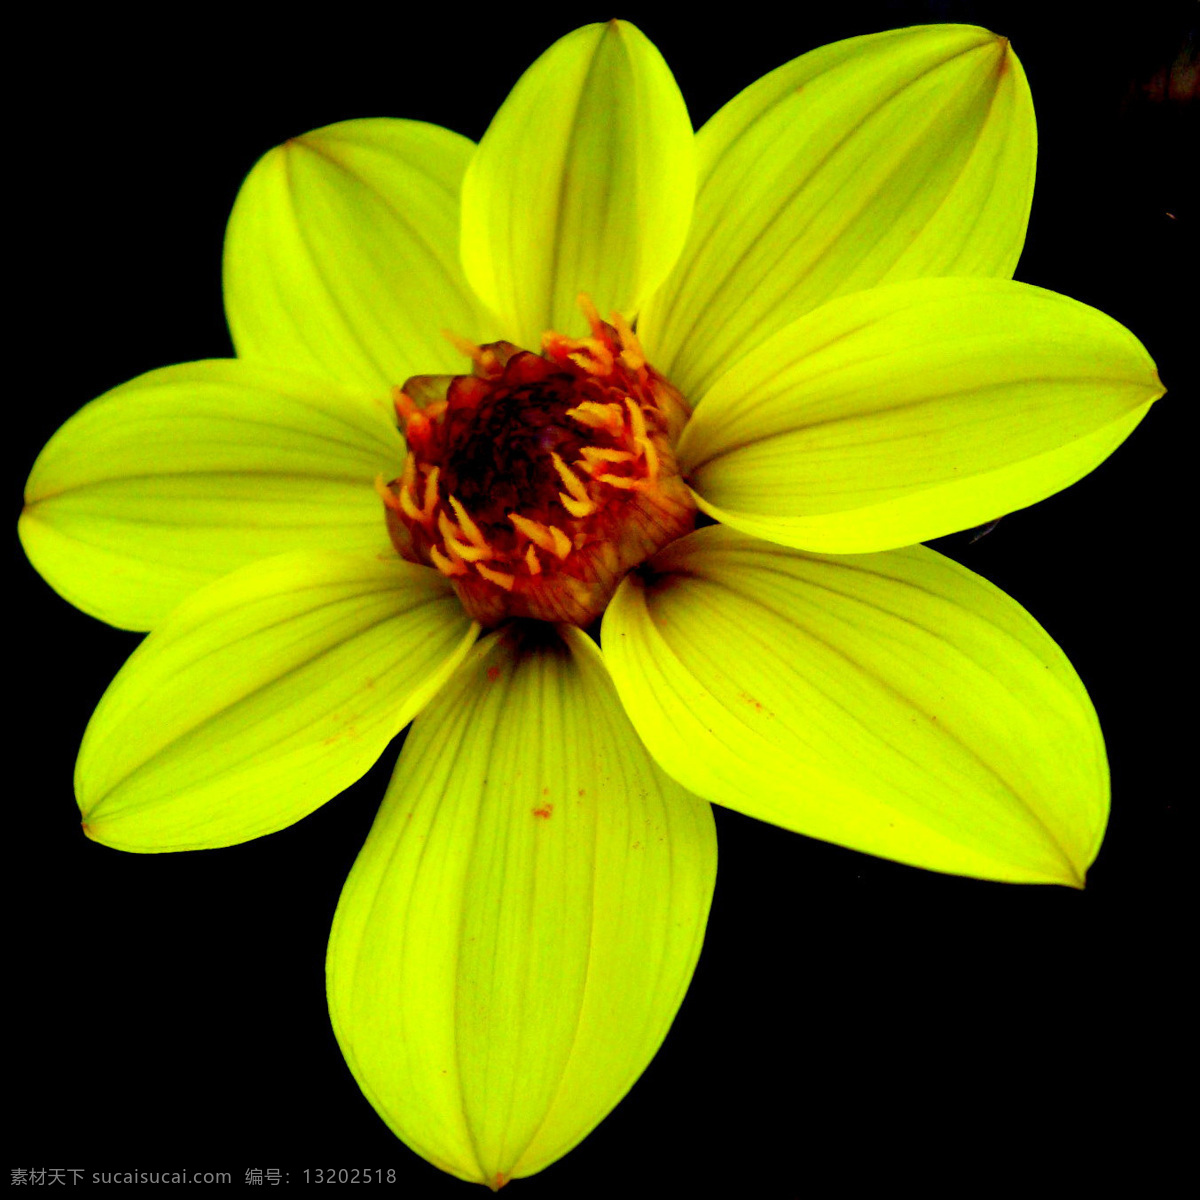 位图 植物摄影 写实花卉 花朵 水仙 免费素材 面料图库 服装图案 黑色